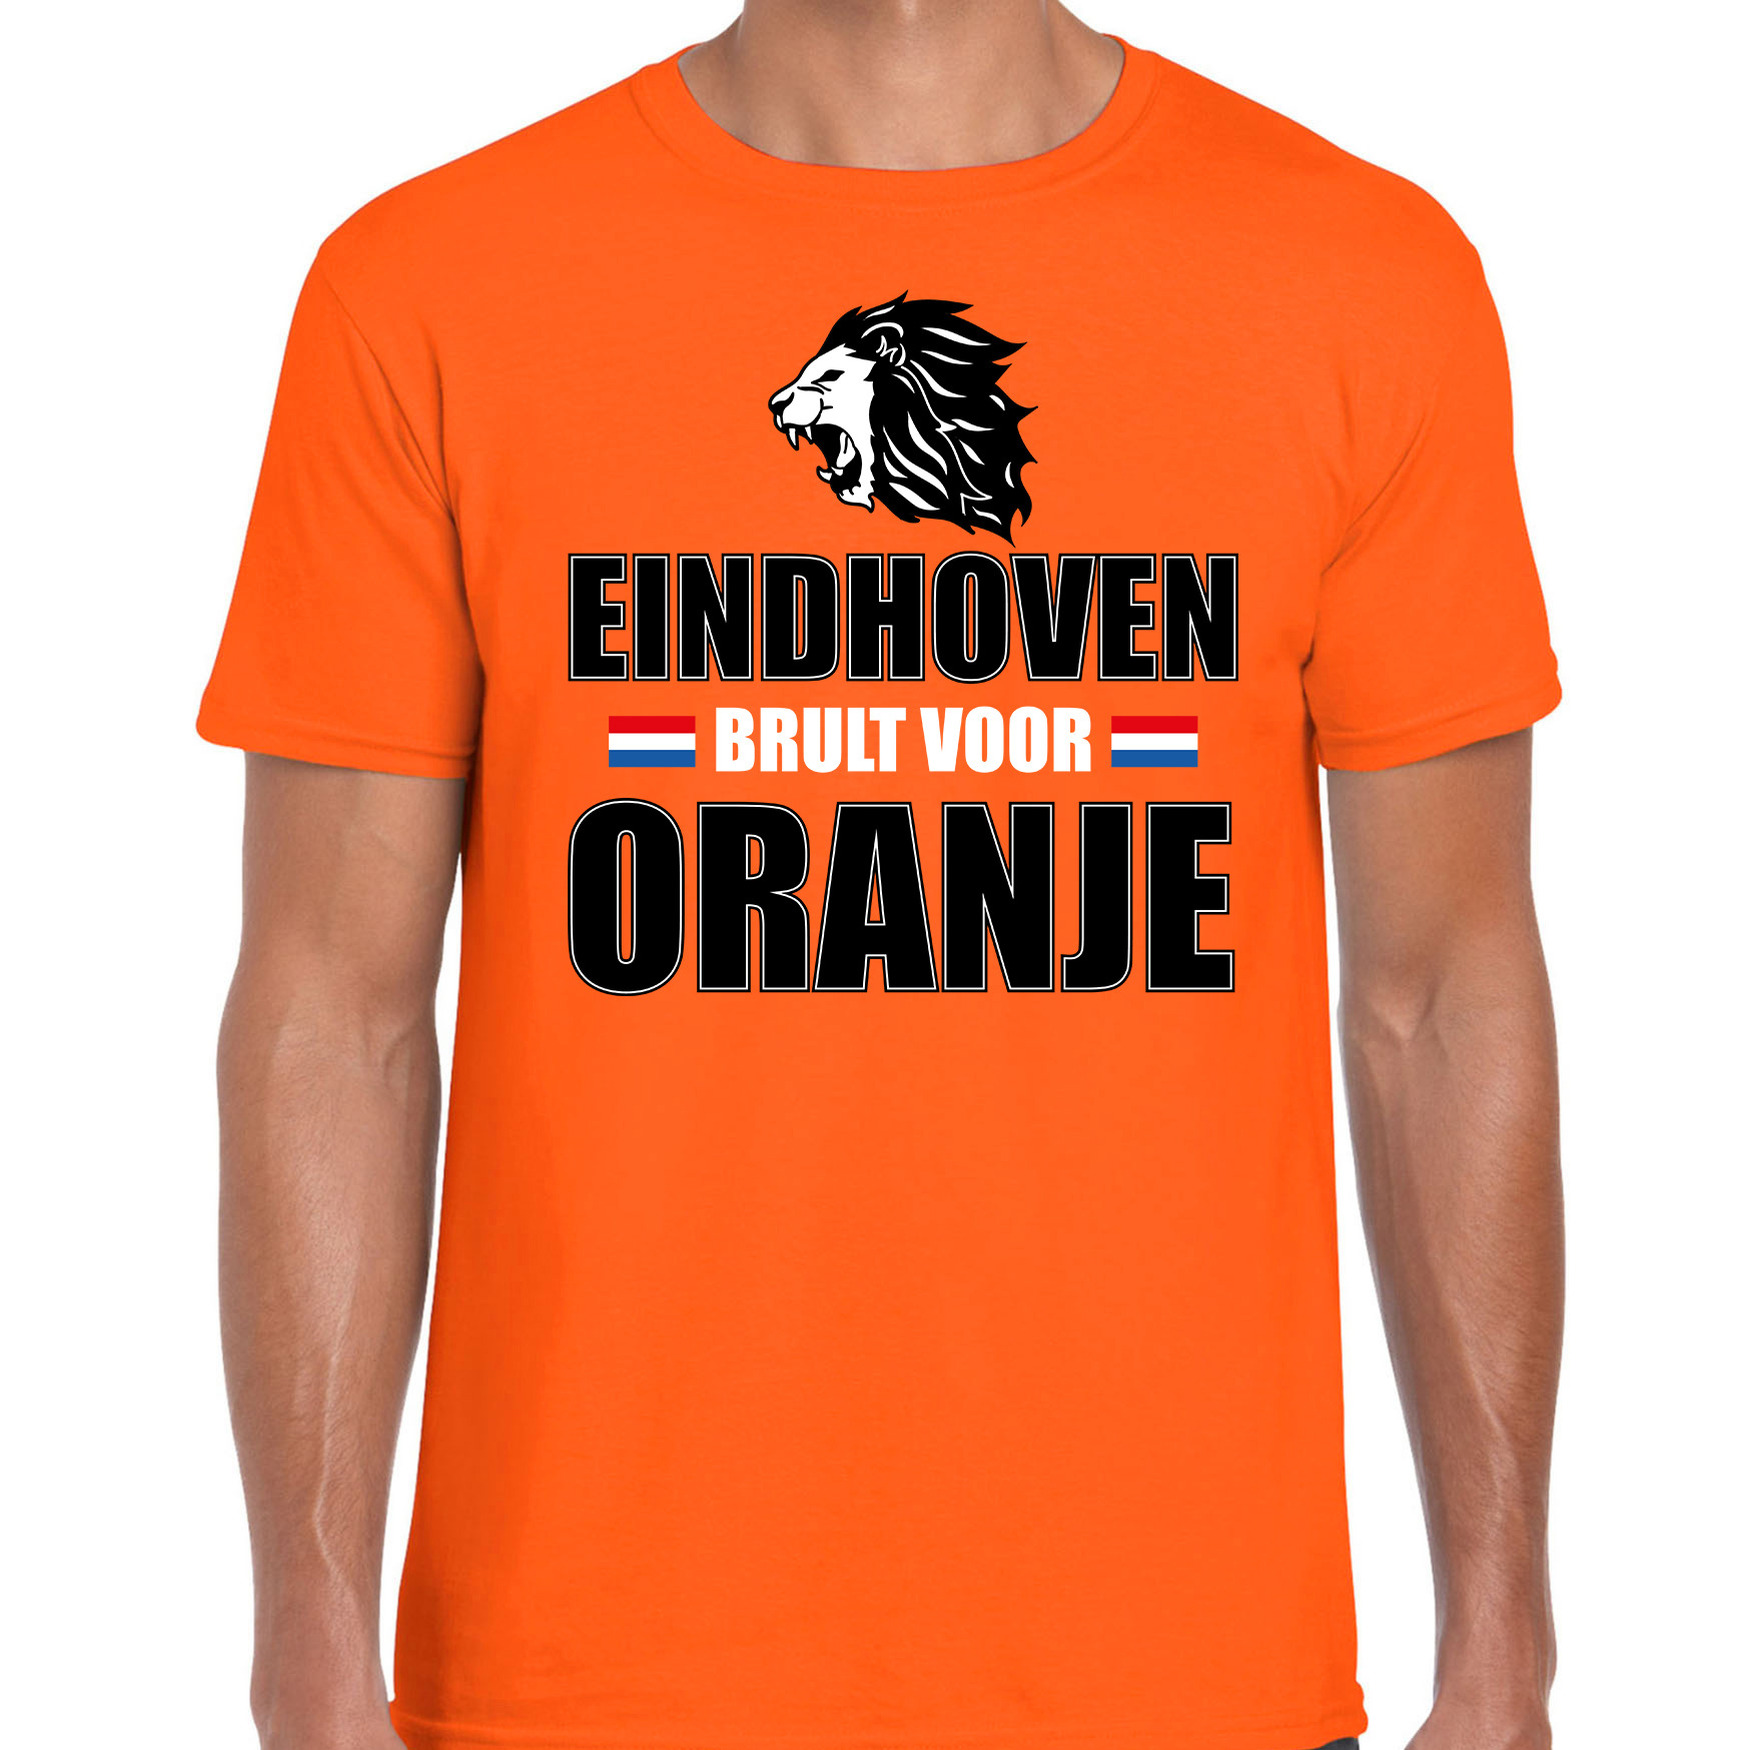 Oranje t-shirt Eindhoven brult voor oranje heren Holland-Nederland supporter shirt EK- WK